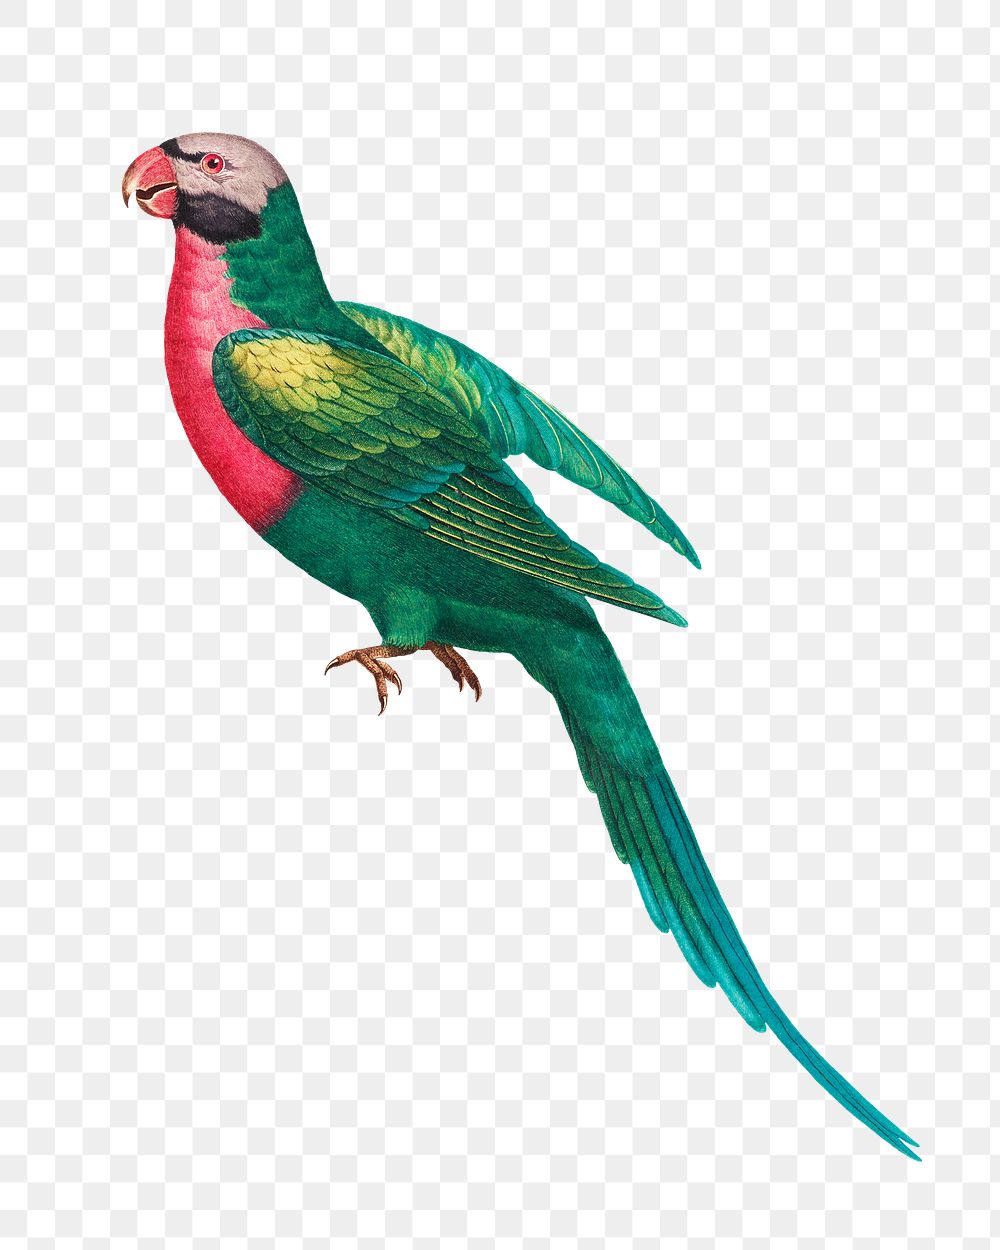 Red-breasted Parakeet png bird sticker, vintage animal illustration, transparent background